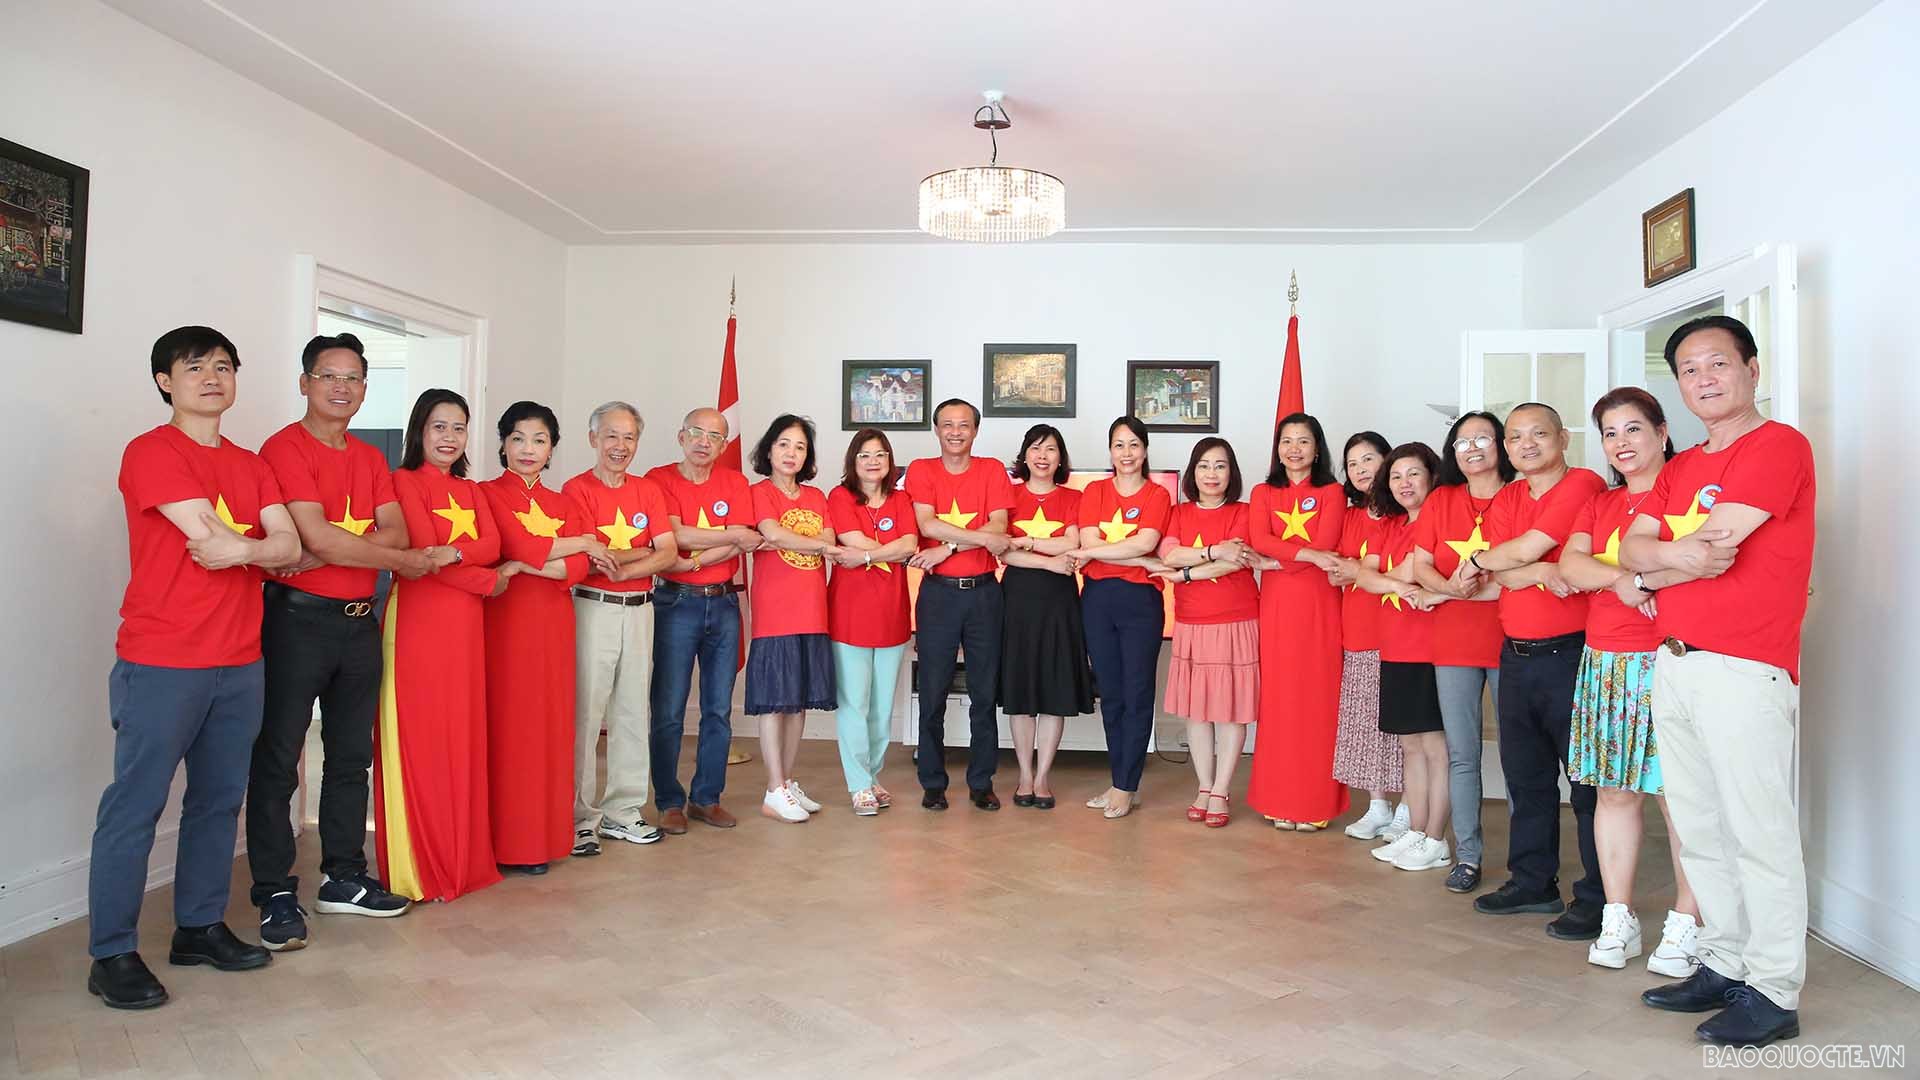 Đại sứ Lương Thanh Nghị đã đón tiếp và giao lưu với đoàn kiều bào đã từng tham gia các chuyến thăm quân và dân huyện đảo Trường Sa và nhà giàn DK1 trong các năm từ 2019 trở về trước.